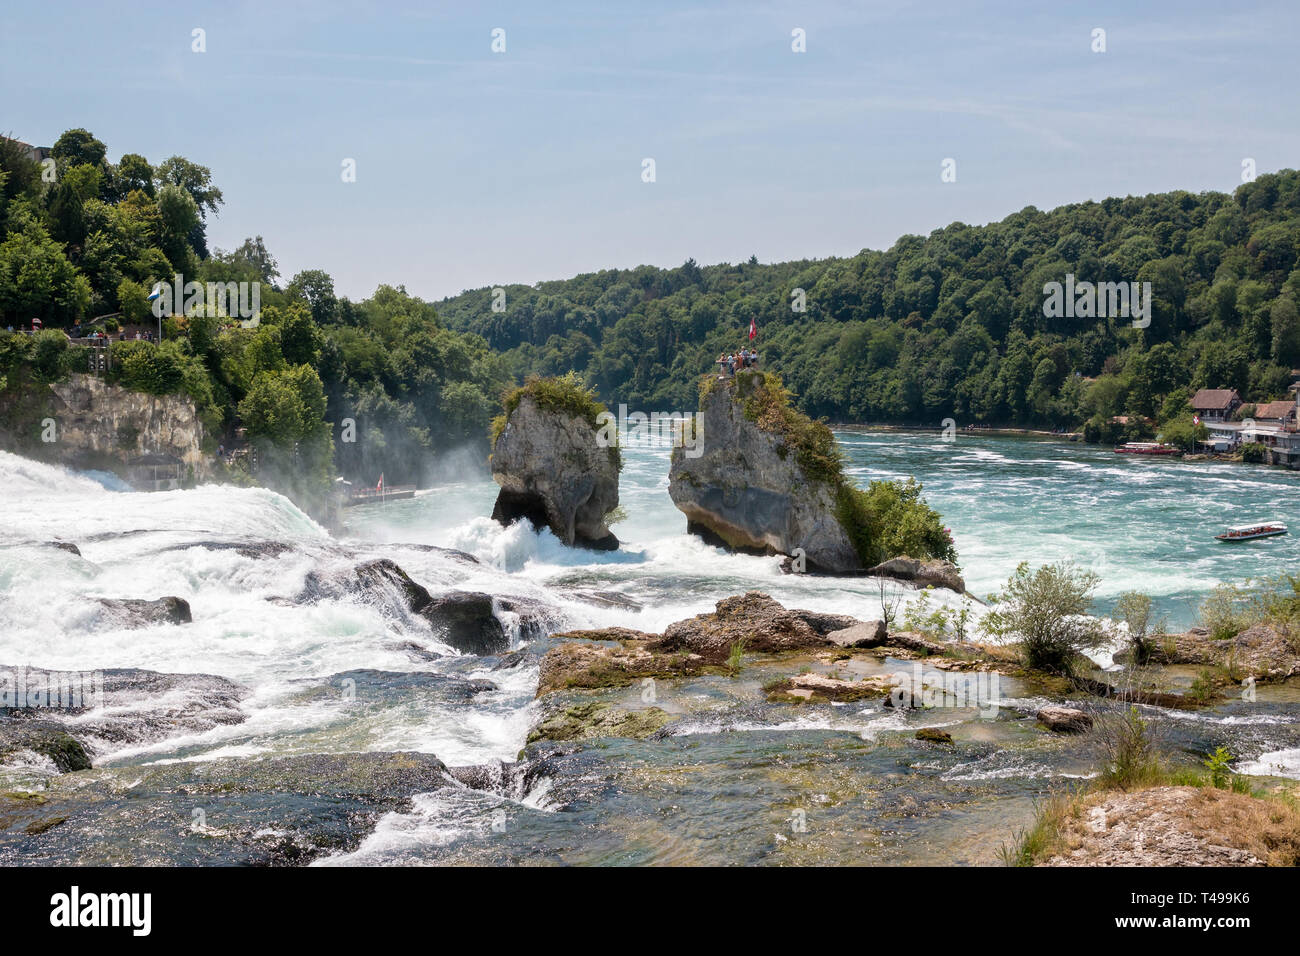 Der Rheinfall, der größte Wasserfall Europas in Schaffhausen, Schweiz. Sommer Landschaft, Sonnenschein Wetter, blauer Himmel und sonnigen Tag Stockfoto